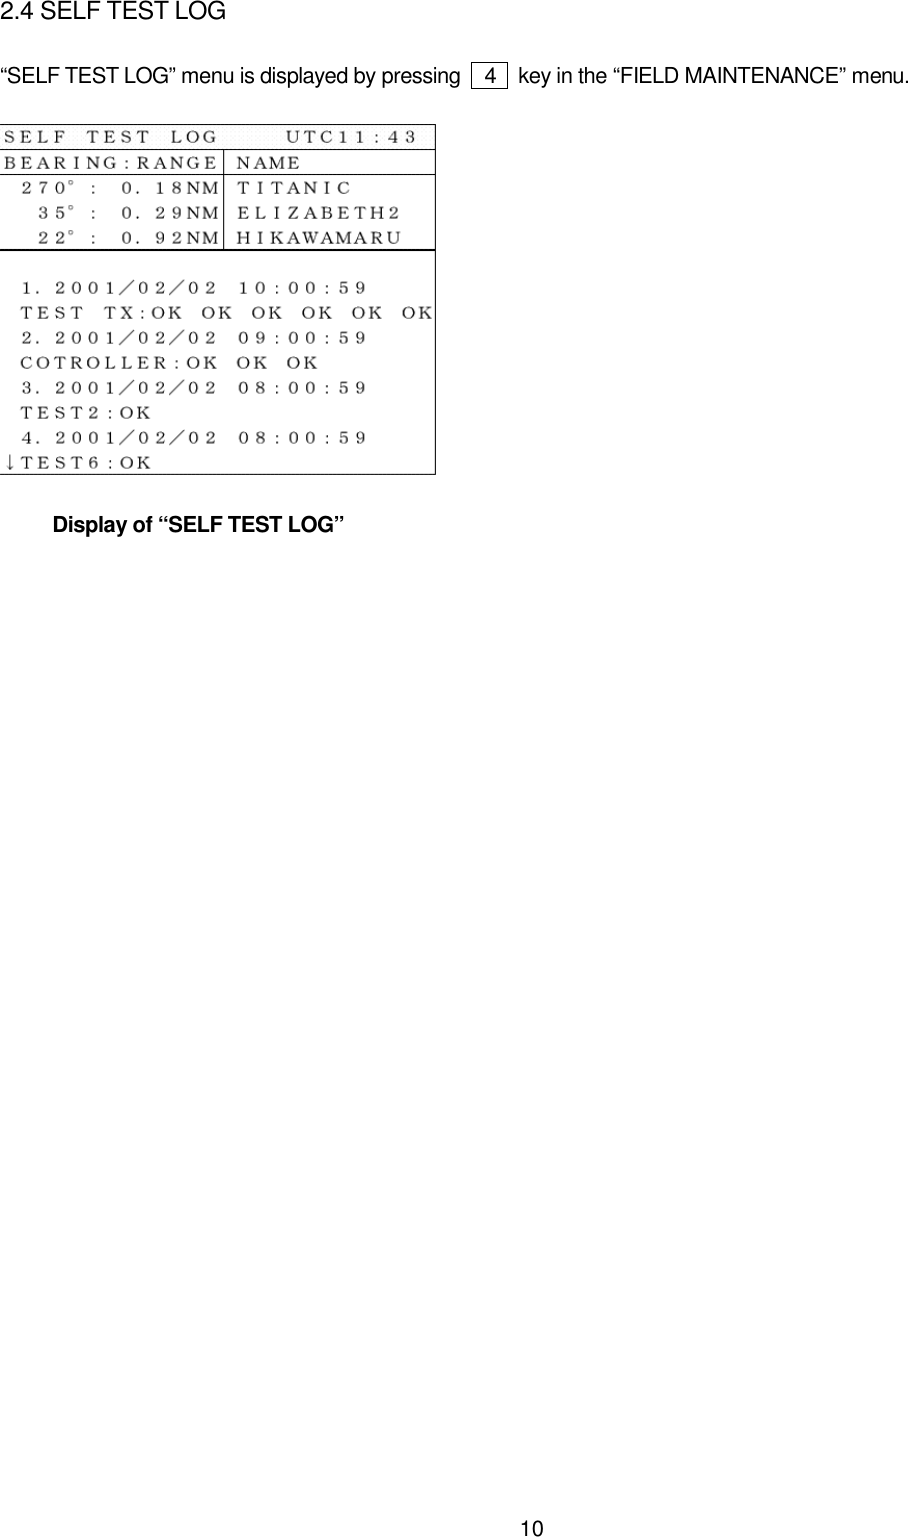 102.4 SELF TEST LOG“SELF TEST LOG” menu is displayed by pressing    4    key in the “FIELD MAINTENANCE” menu.     Display of “SELF TEST LOG”